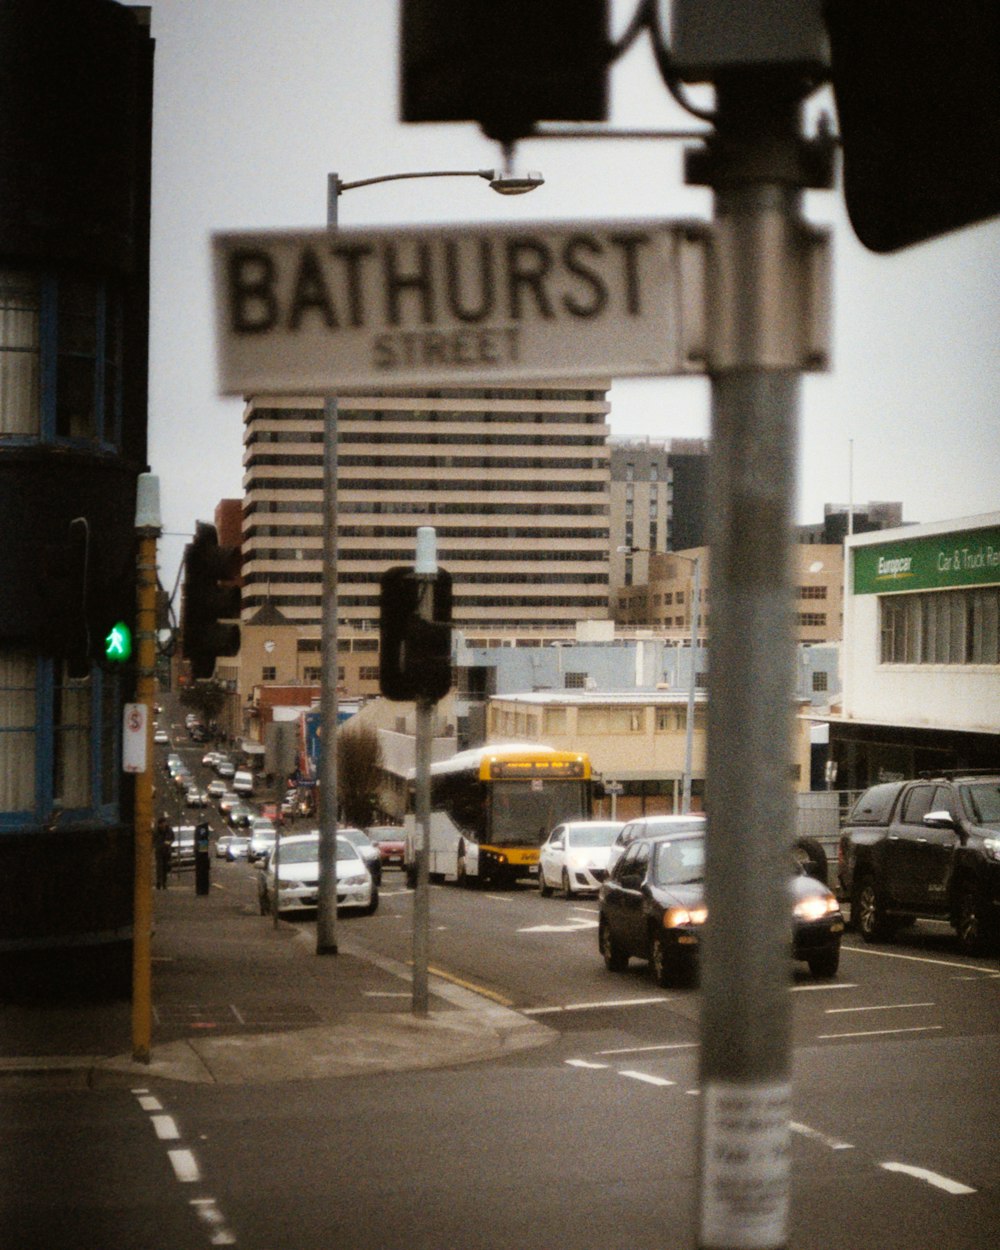 uma placa de rua que diz rua bathhurst